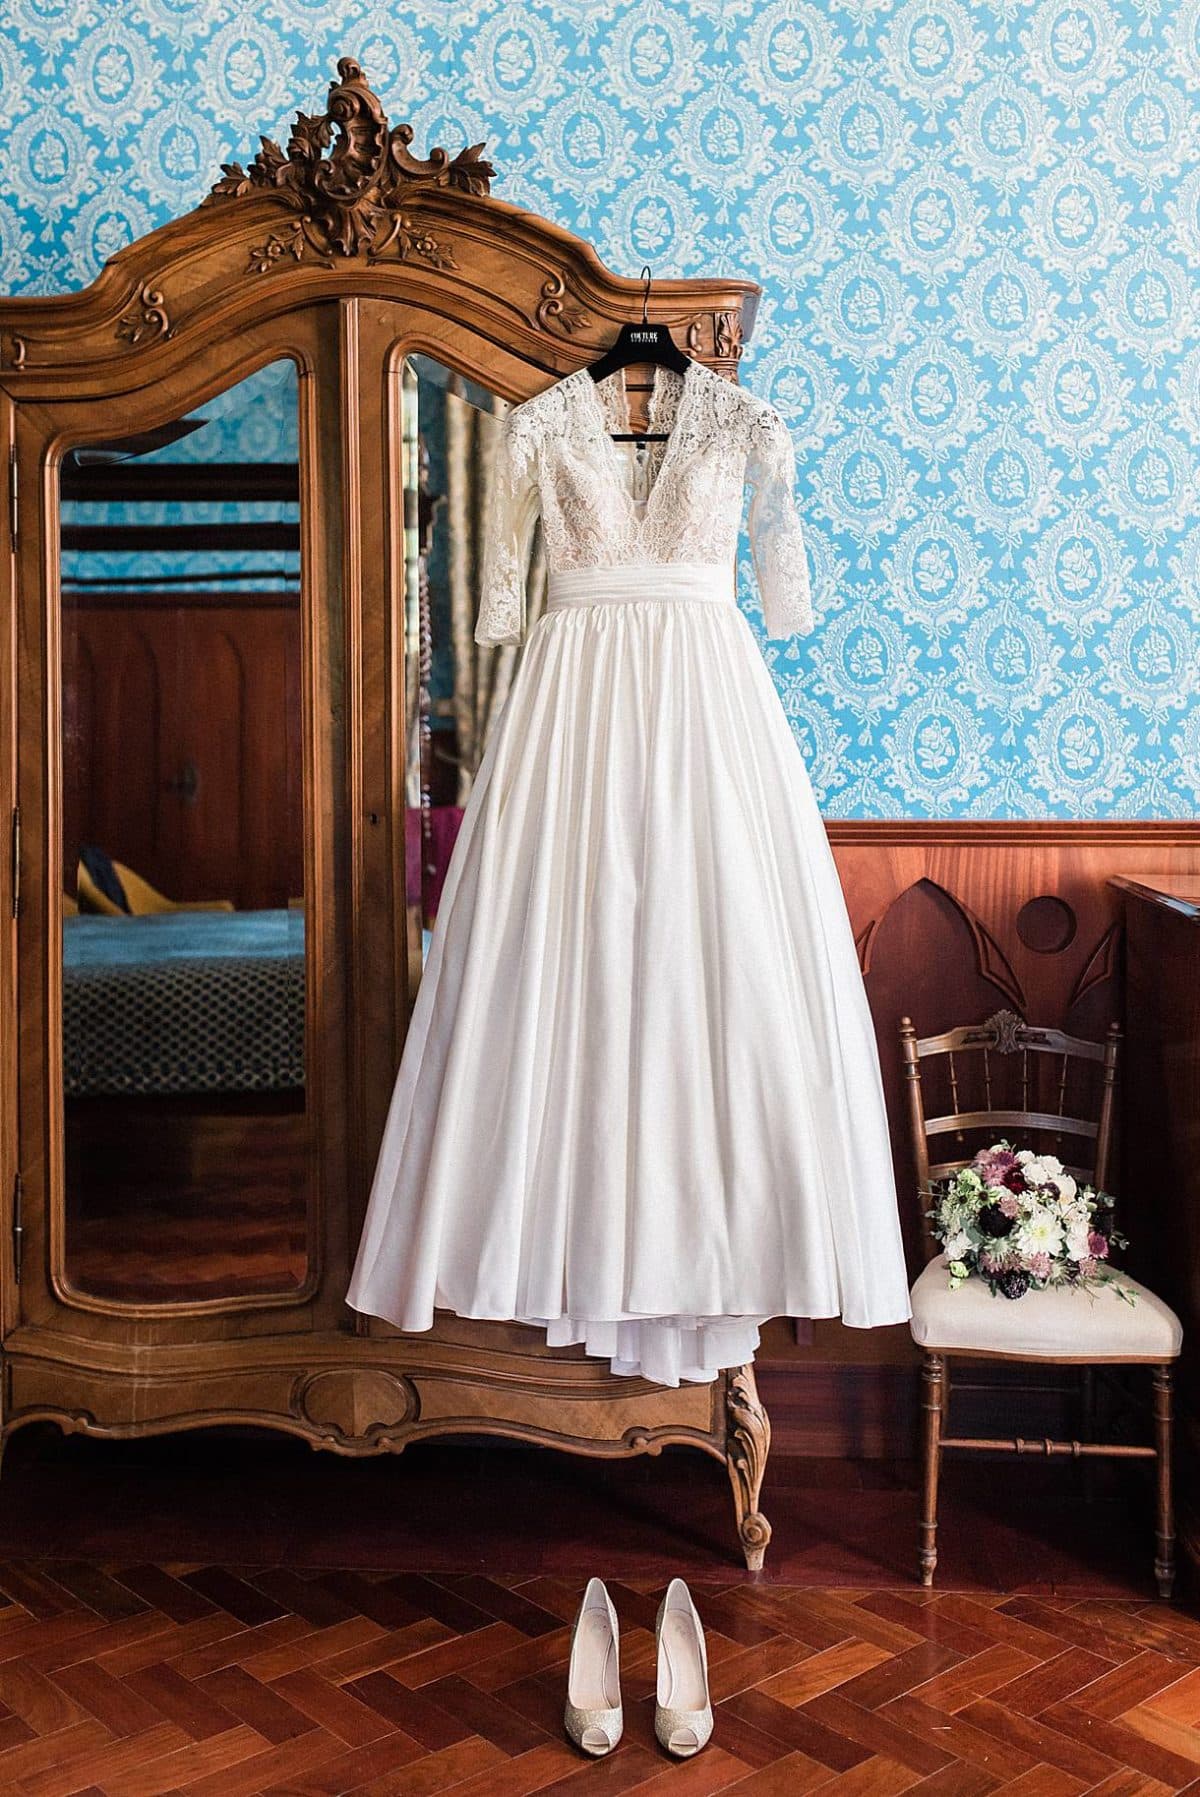 détails de la robe de mariée et de son bouquet de fleurs au chateau de la ligne photos réalisé par pixaile photography photographe de mariage